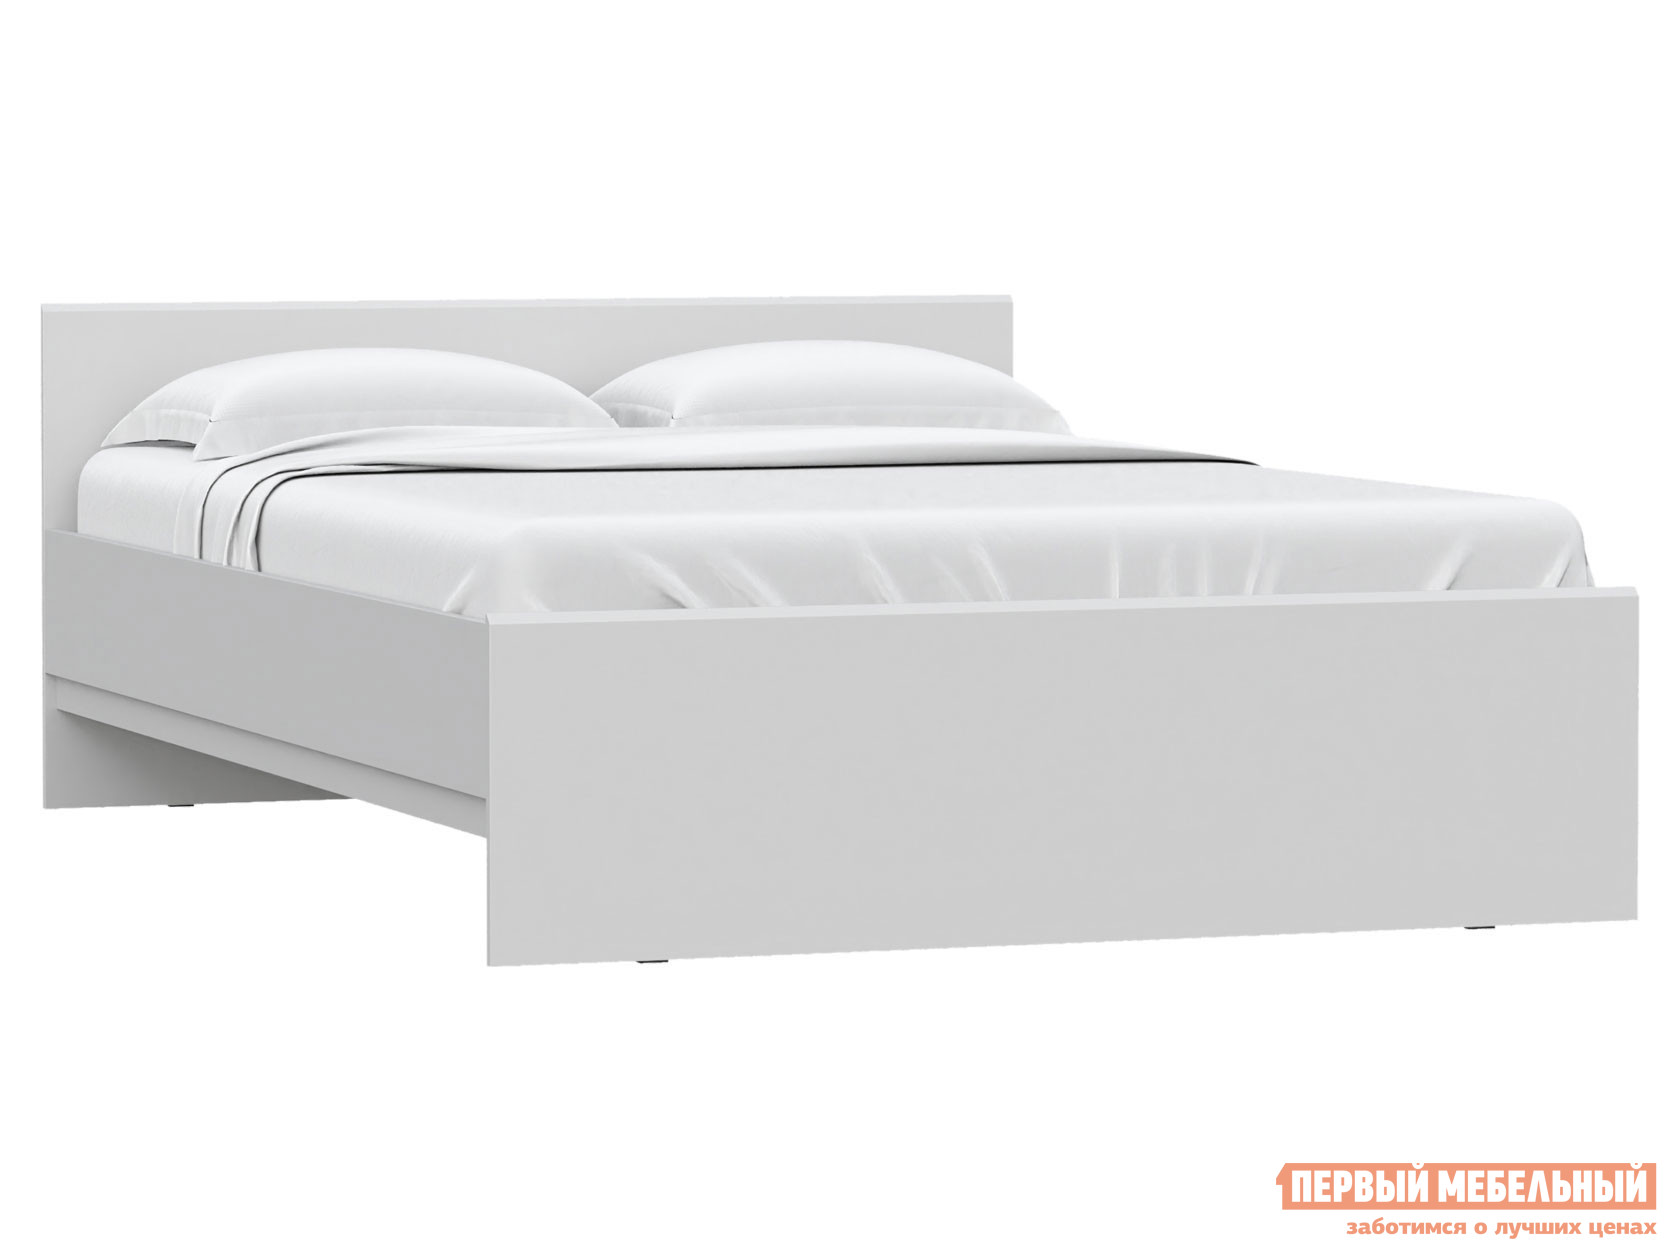 Двуспальная кровать  Штерн Белый матовый, 140х200 см